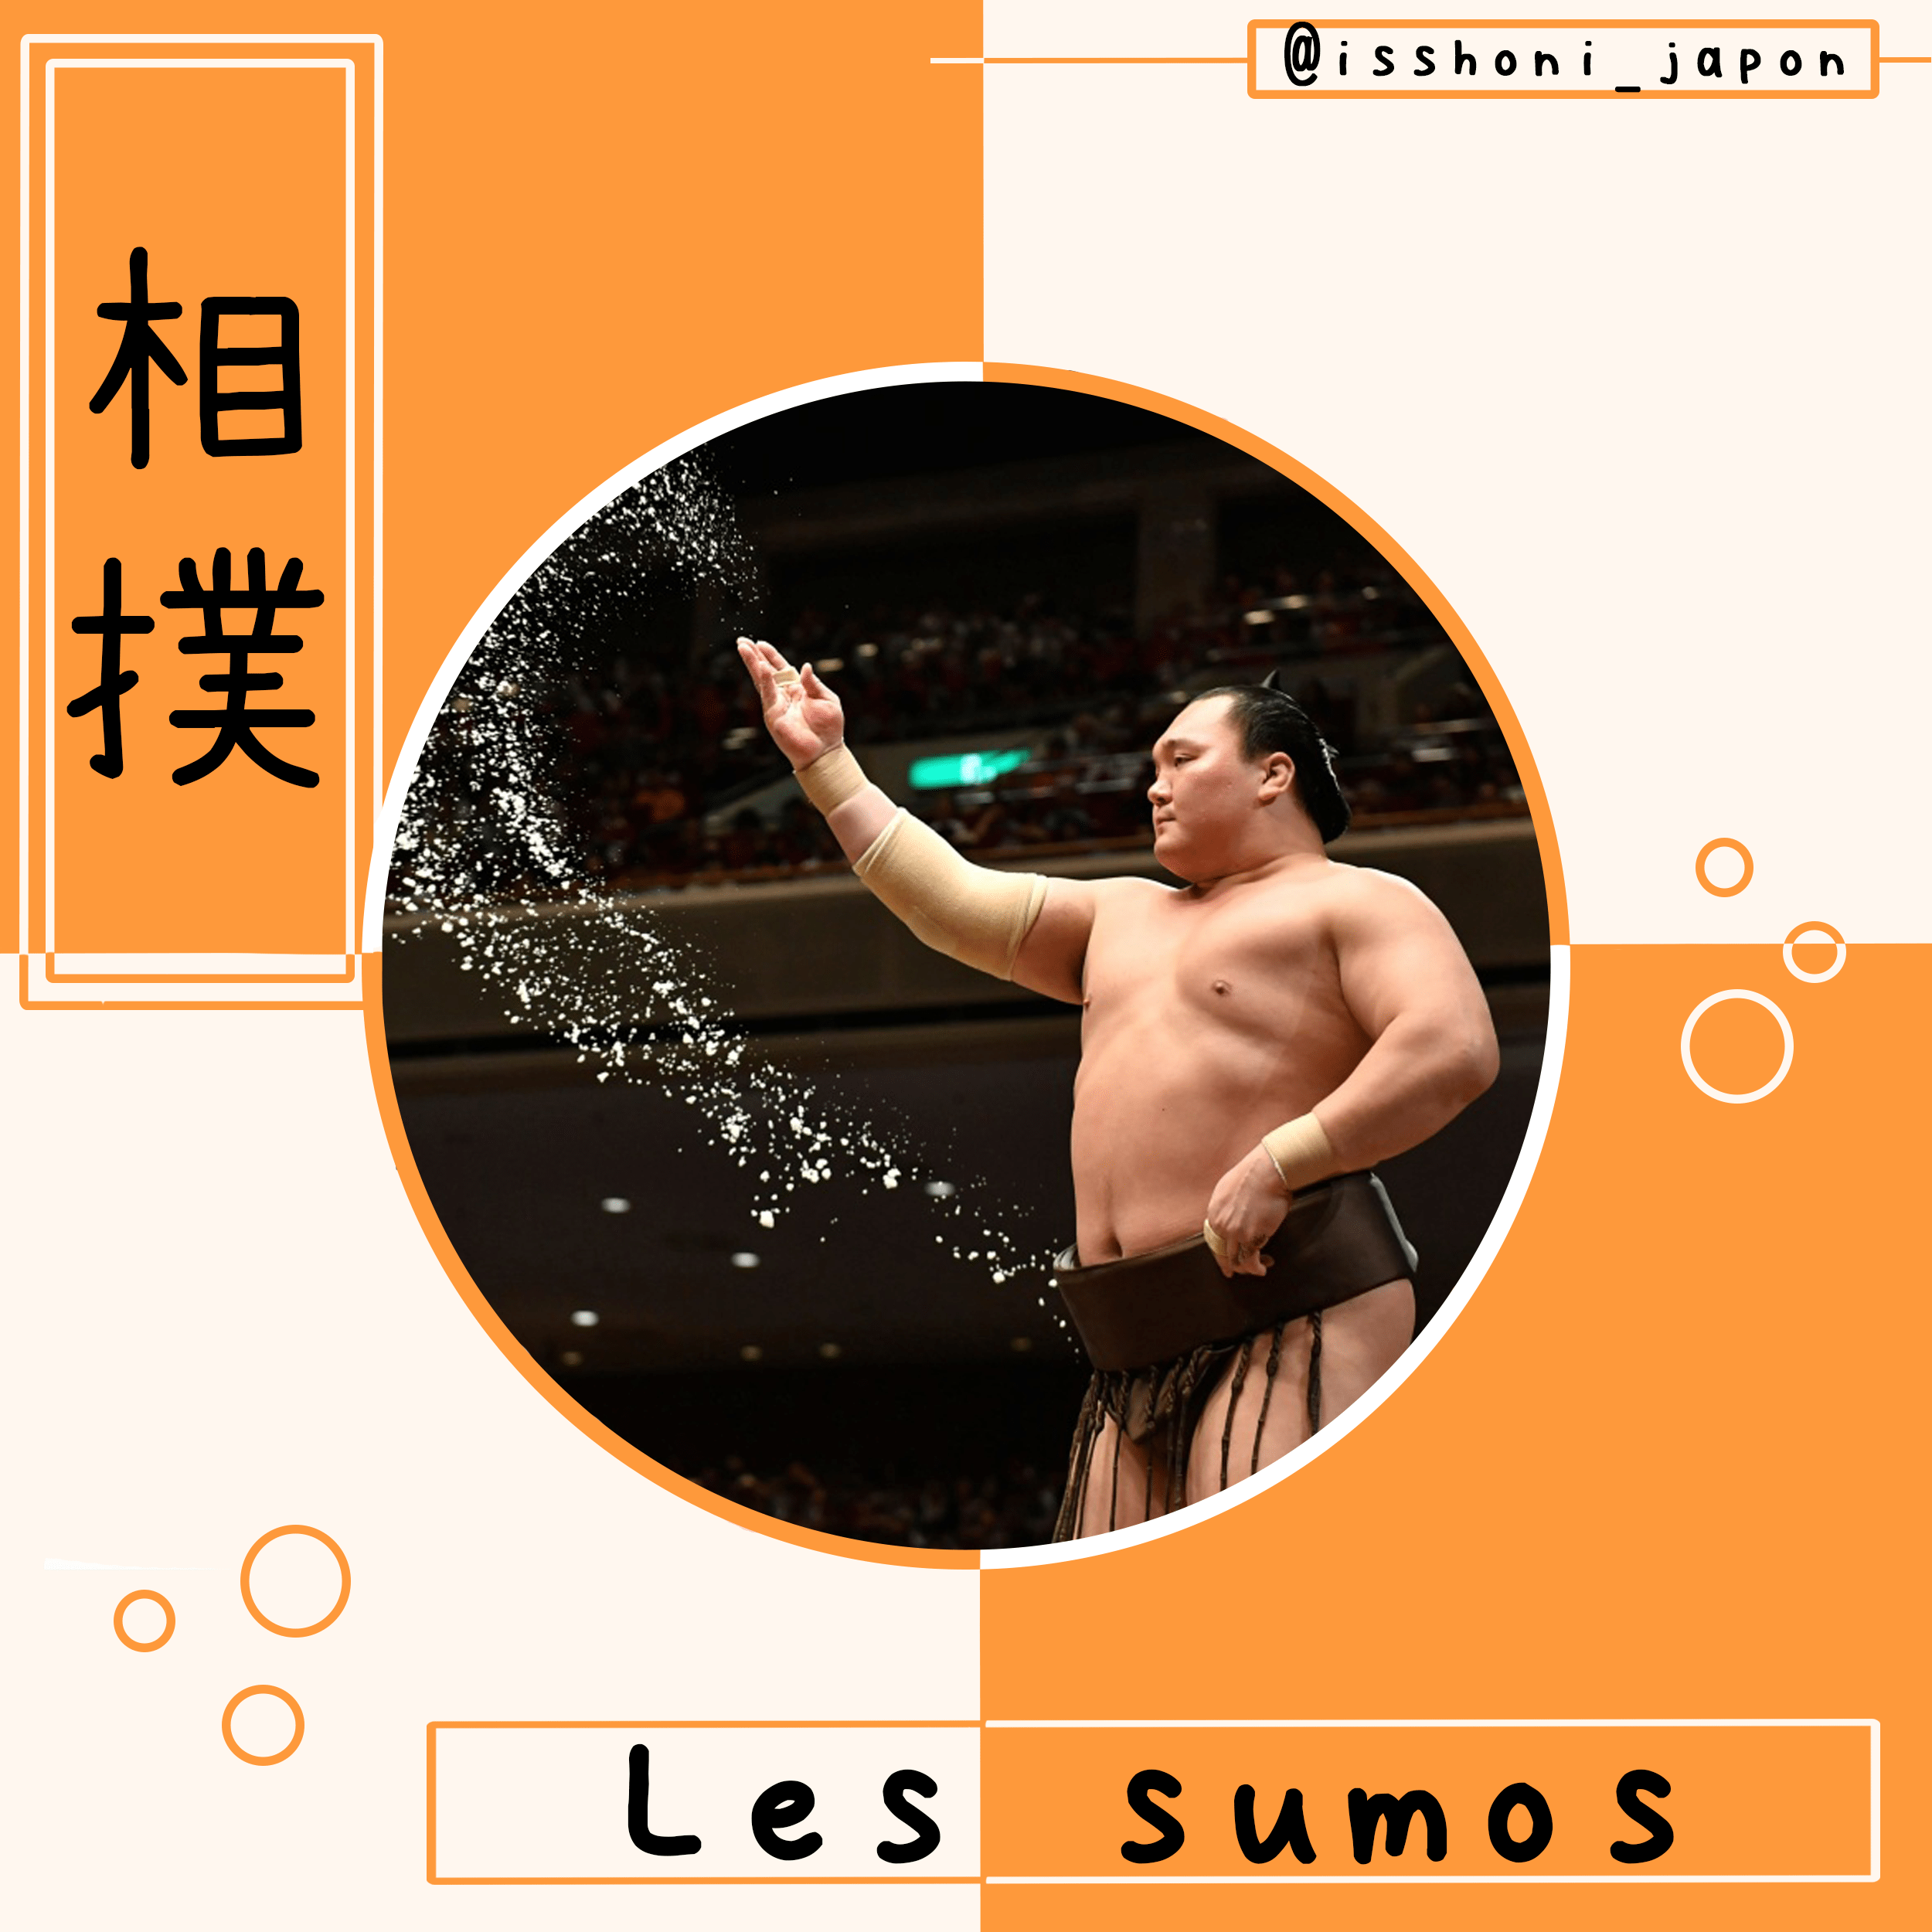 Combat de sumo - miniature